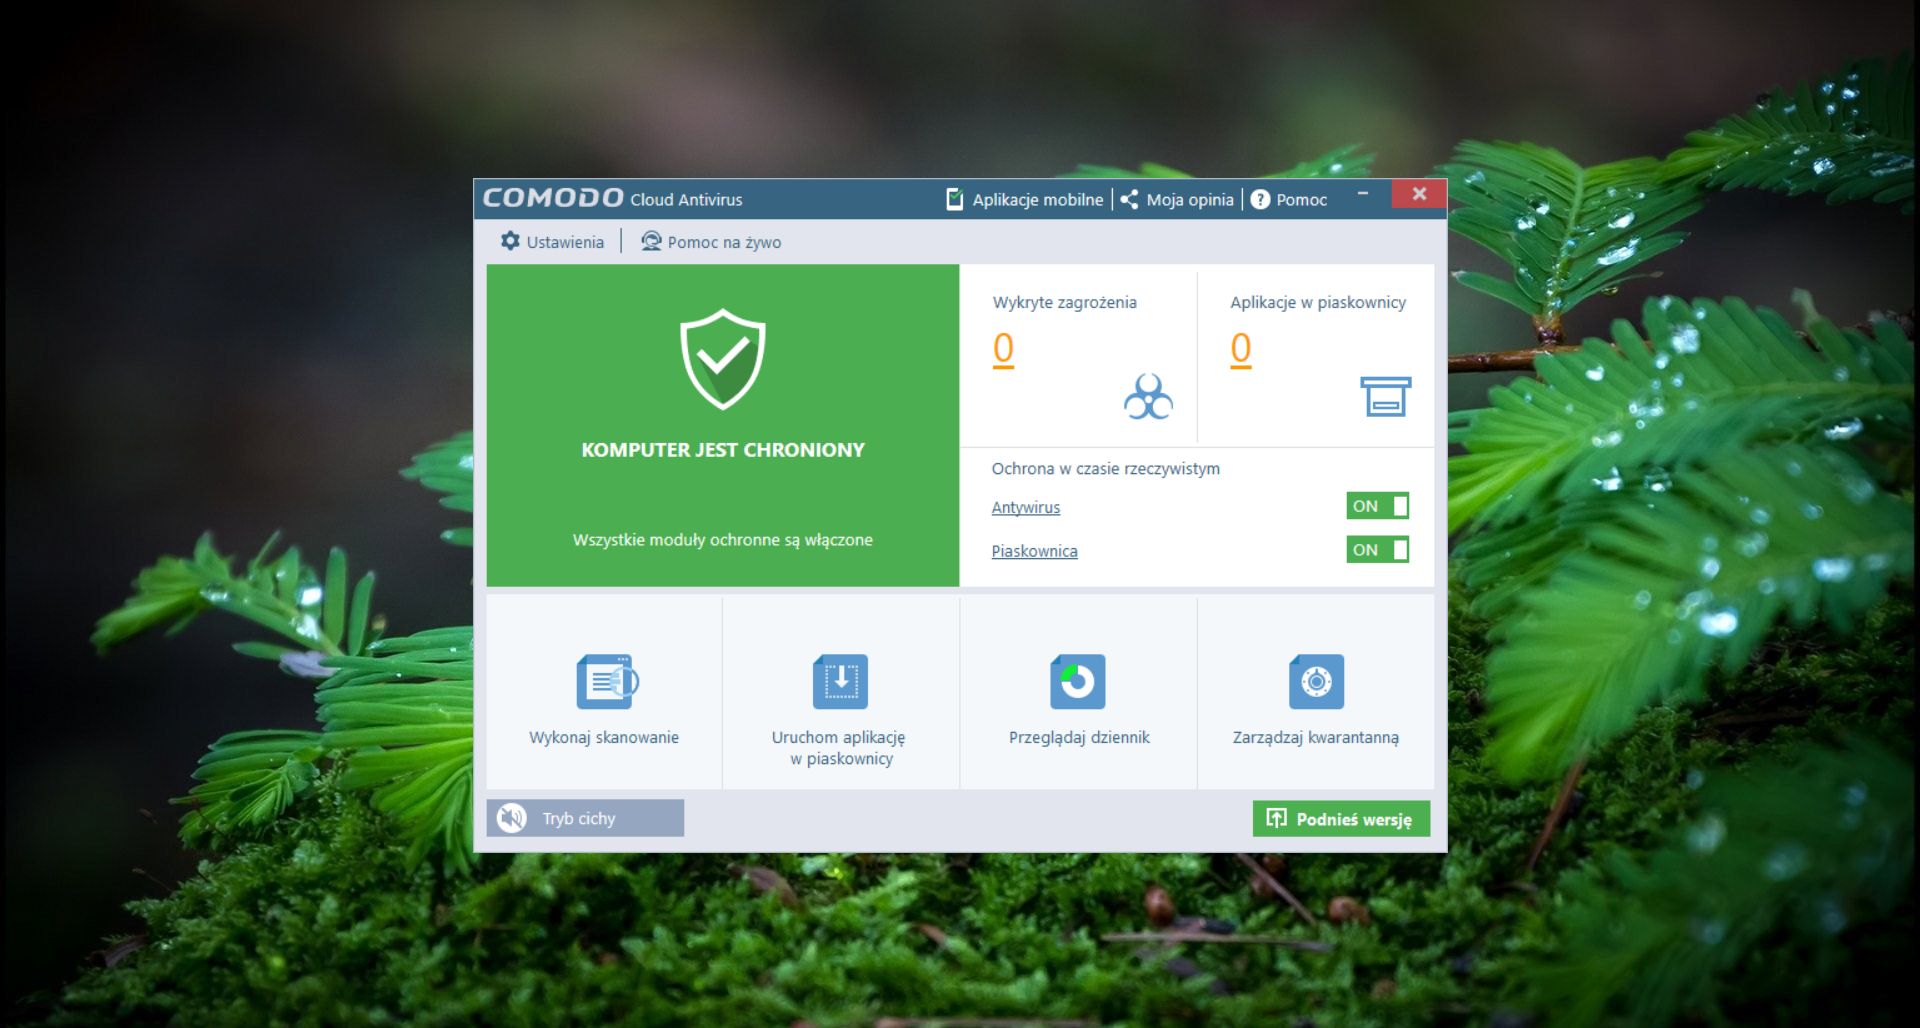 comodo cloud antivirus review